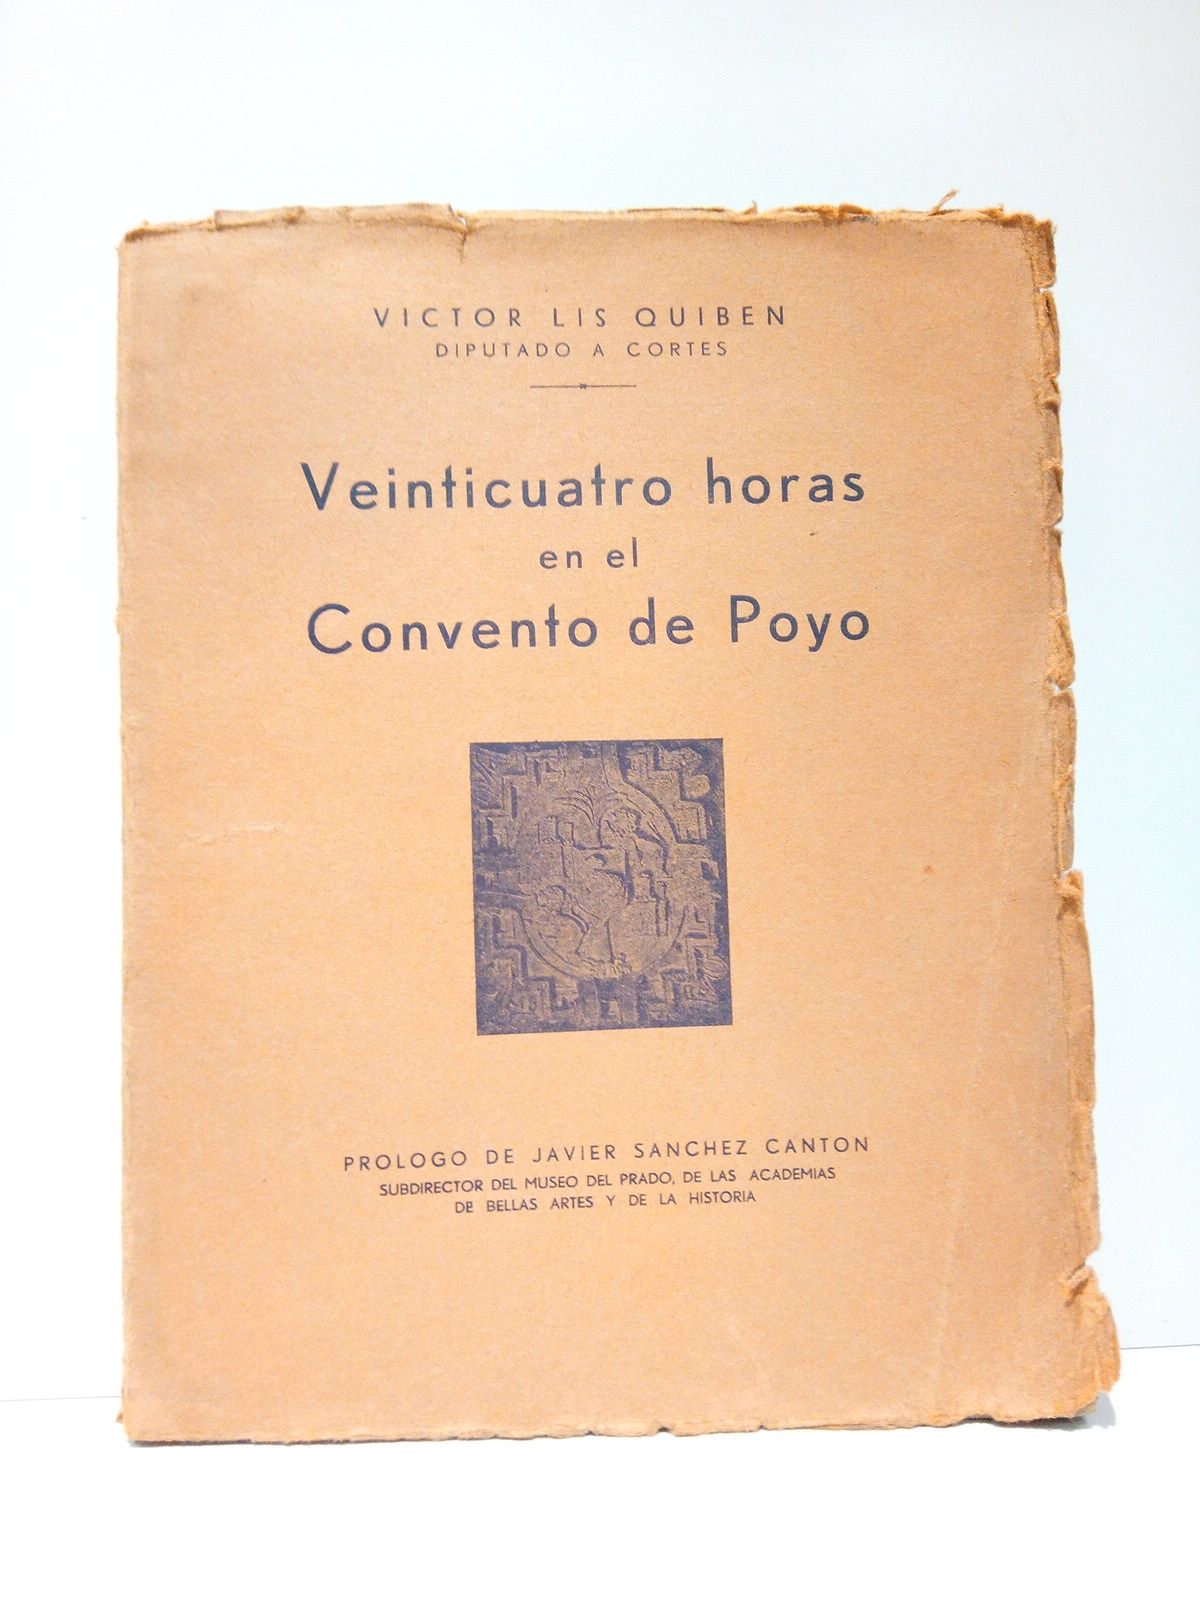 LIS QUIBEN, Vctor - Veinticuatro horas en el Convento de Poyo /  Prol. de Javier Snchez Cantn